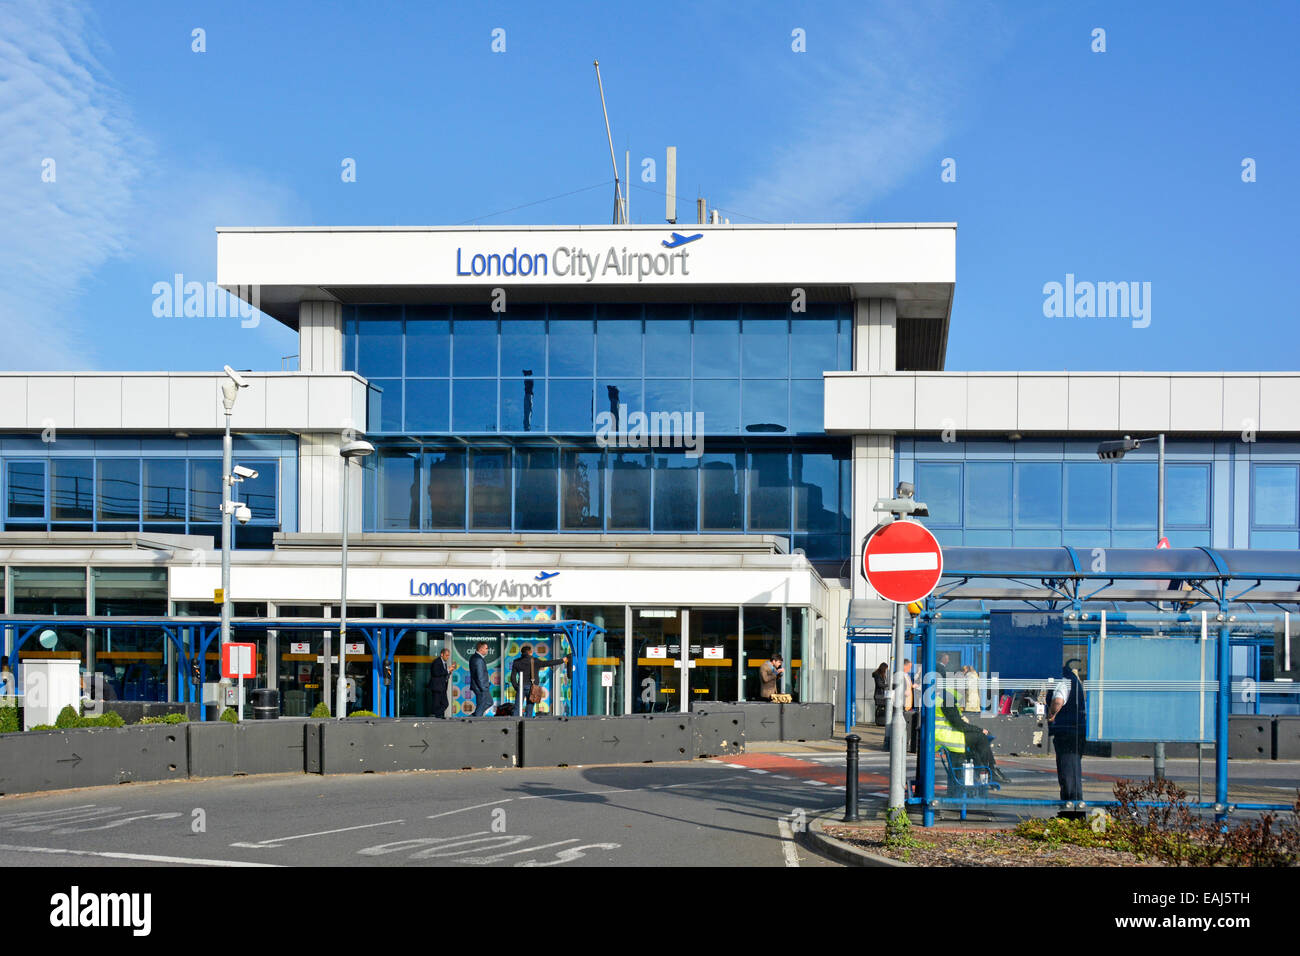 Aéroport de Londres City entrée des passagers aussi accès à une gare Docklands Light Railway & Silvertown Newham East London England UK Banque D'Images